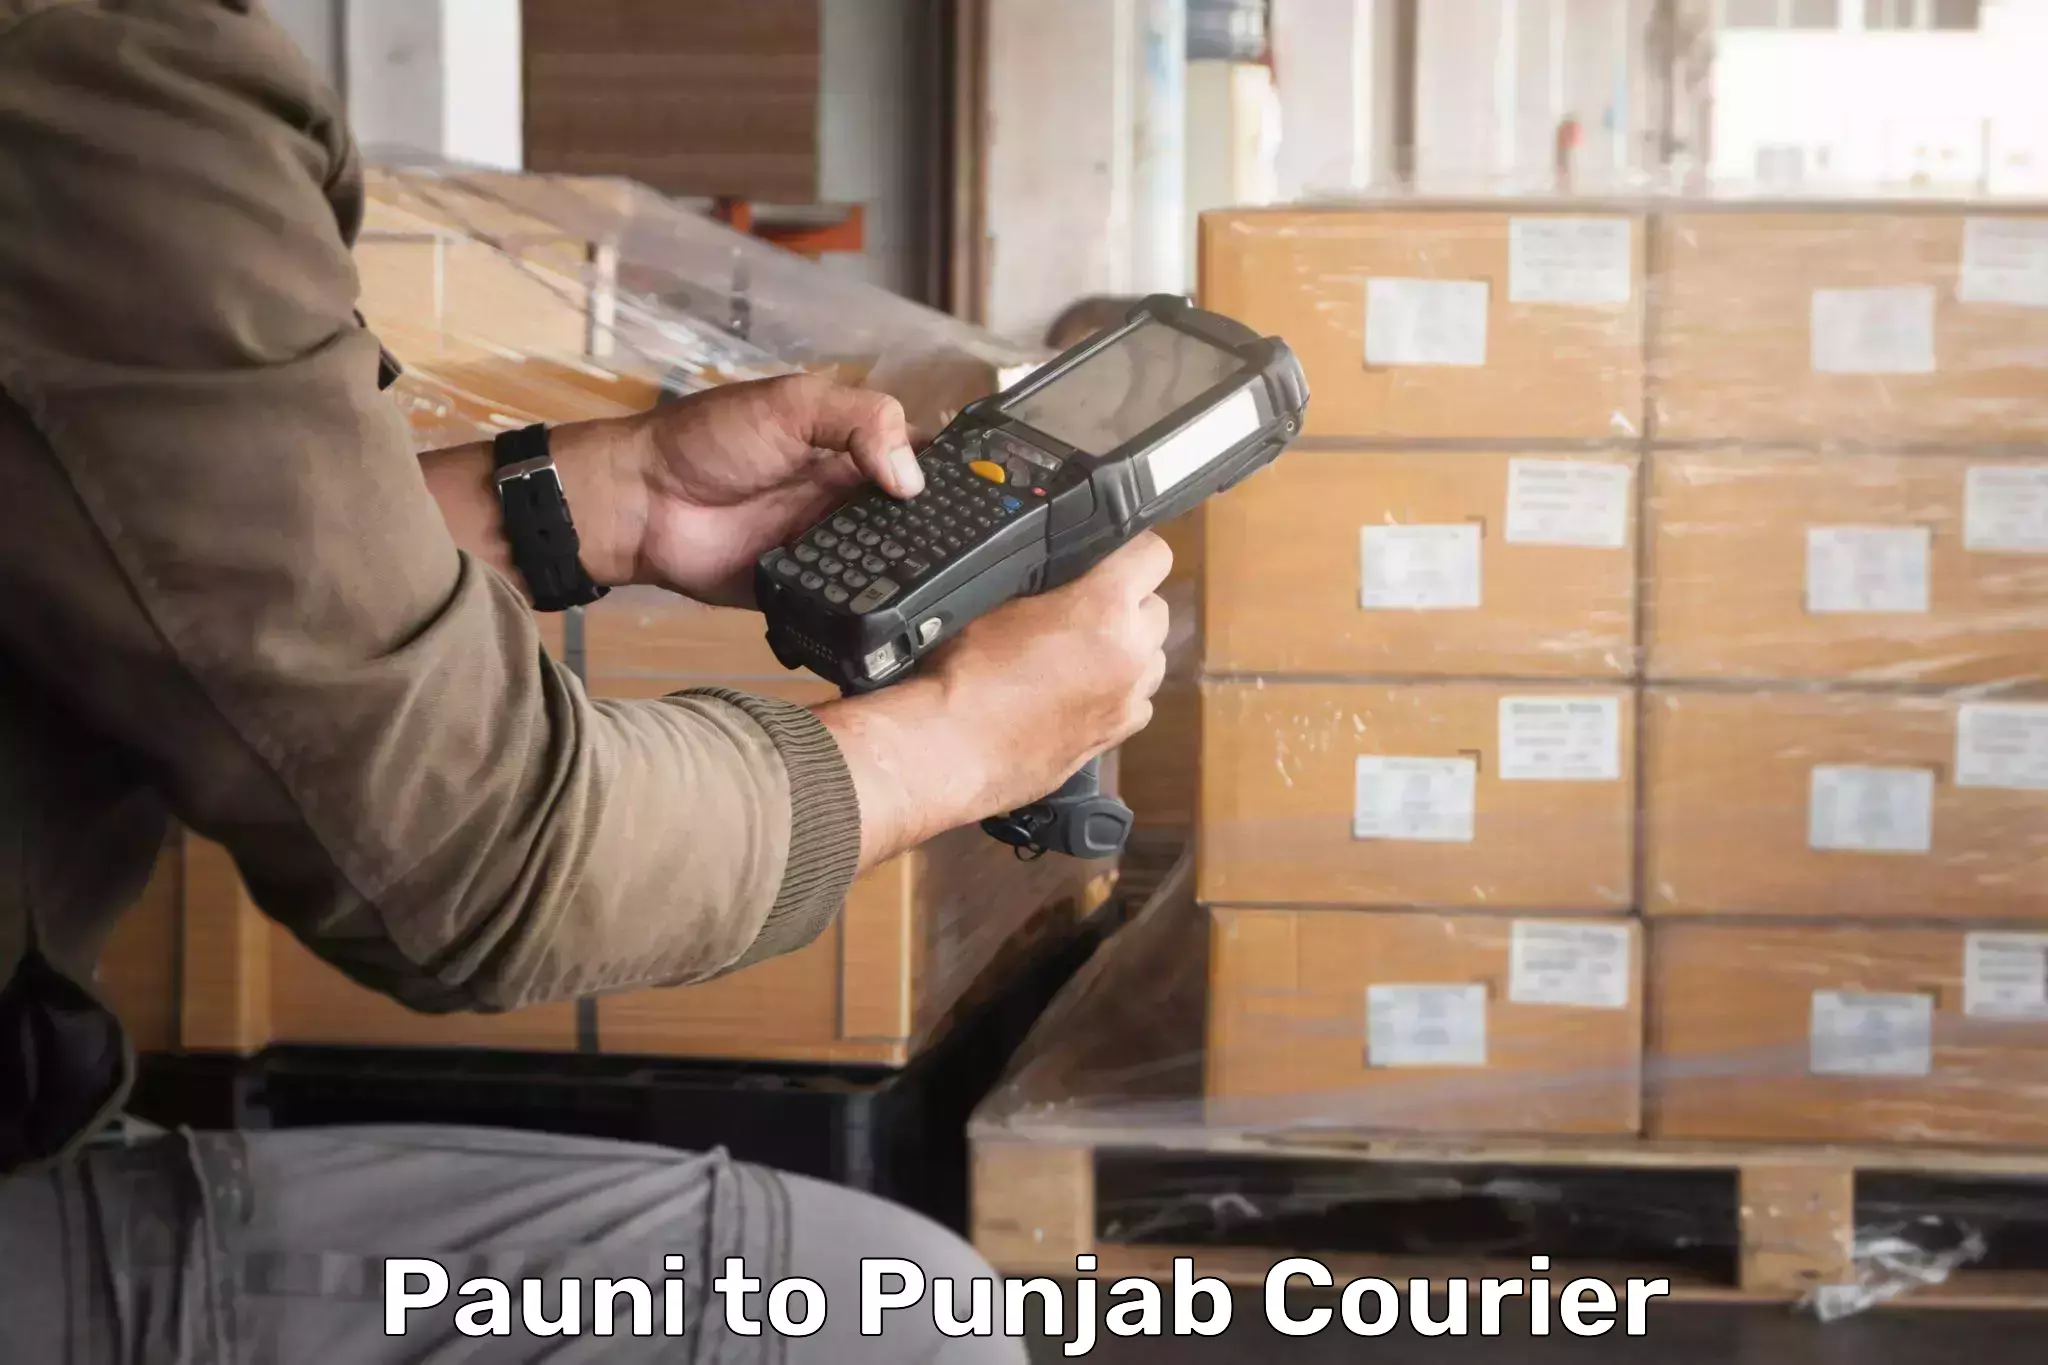 Shipping and handling Pauni to Punjab